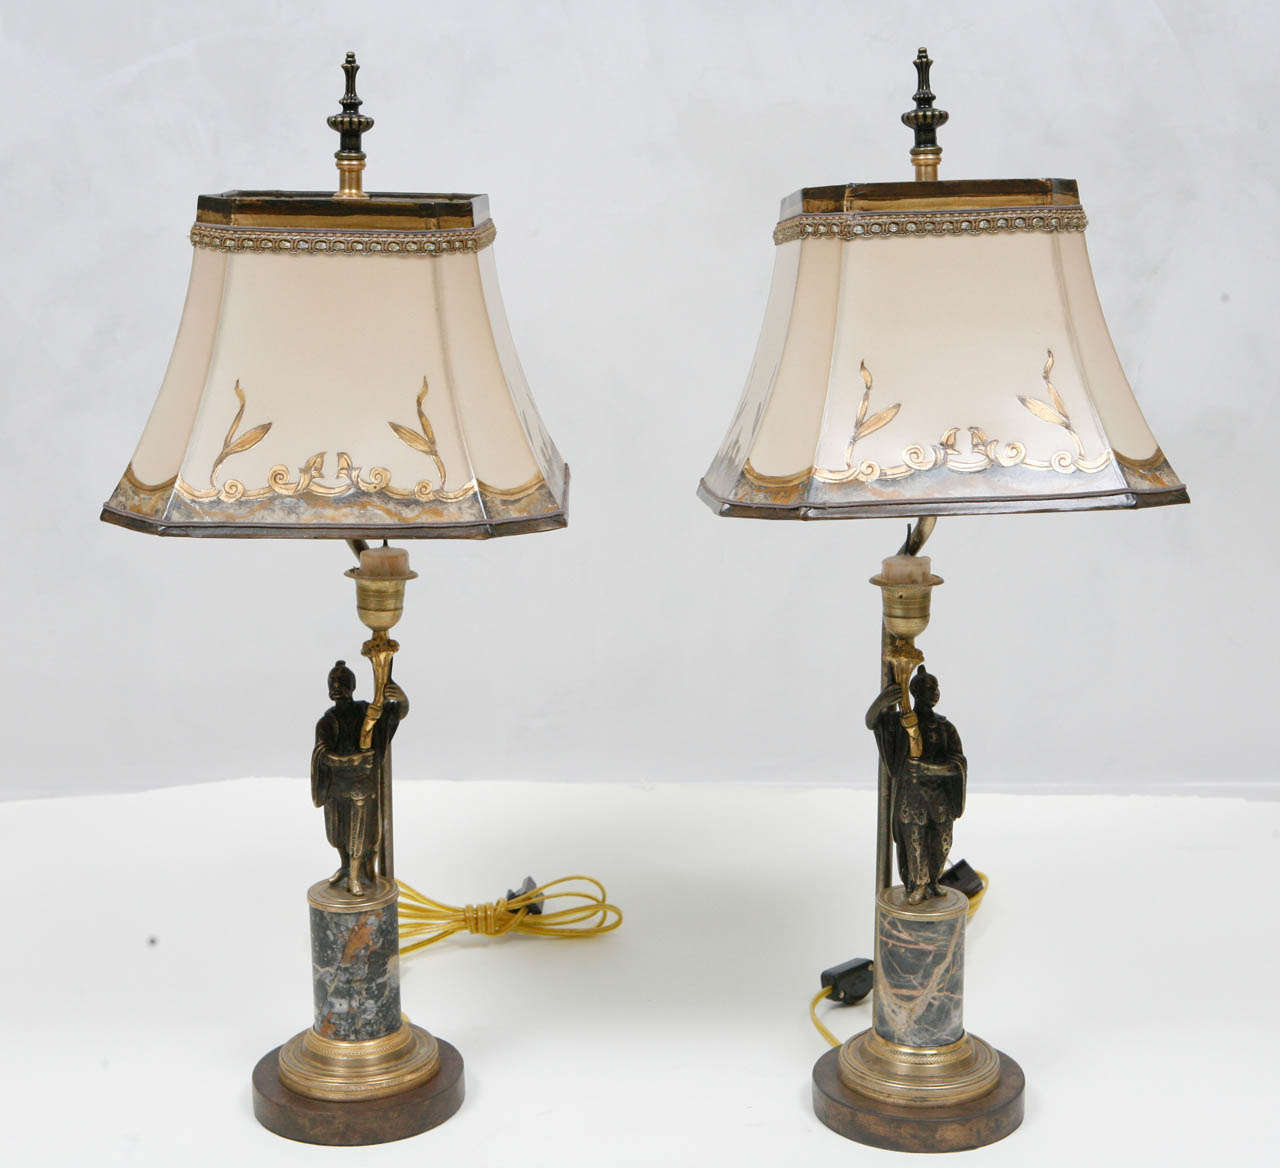 Paire d'objets du 19ème siècle Chandeliers français en bronze et marbre convertis en lampes. La mesure de la base est de 4,5 pouces.  Les abat-jour sont inclus et sont fabriqués à la main en papier parchemin. Ils sont dorés et décorés à la main. Les